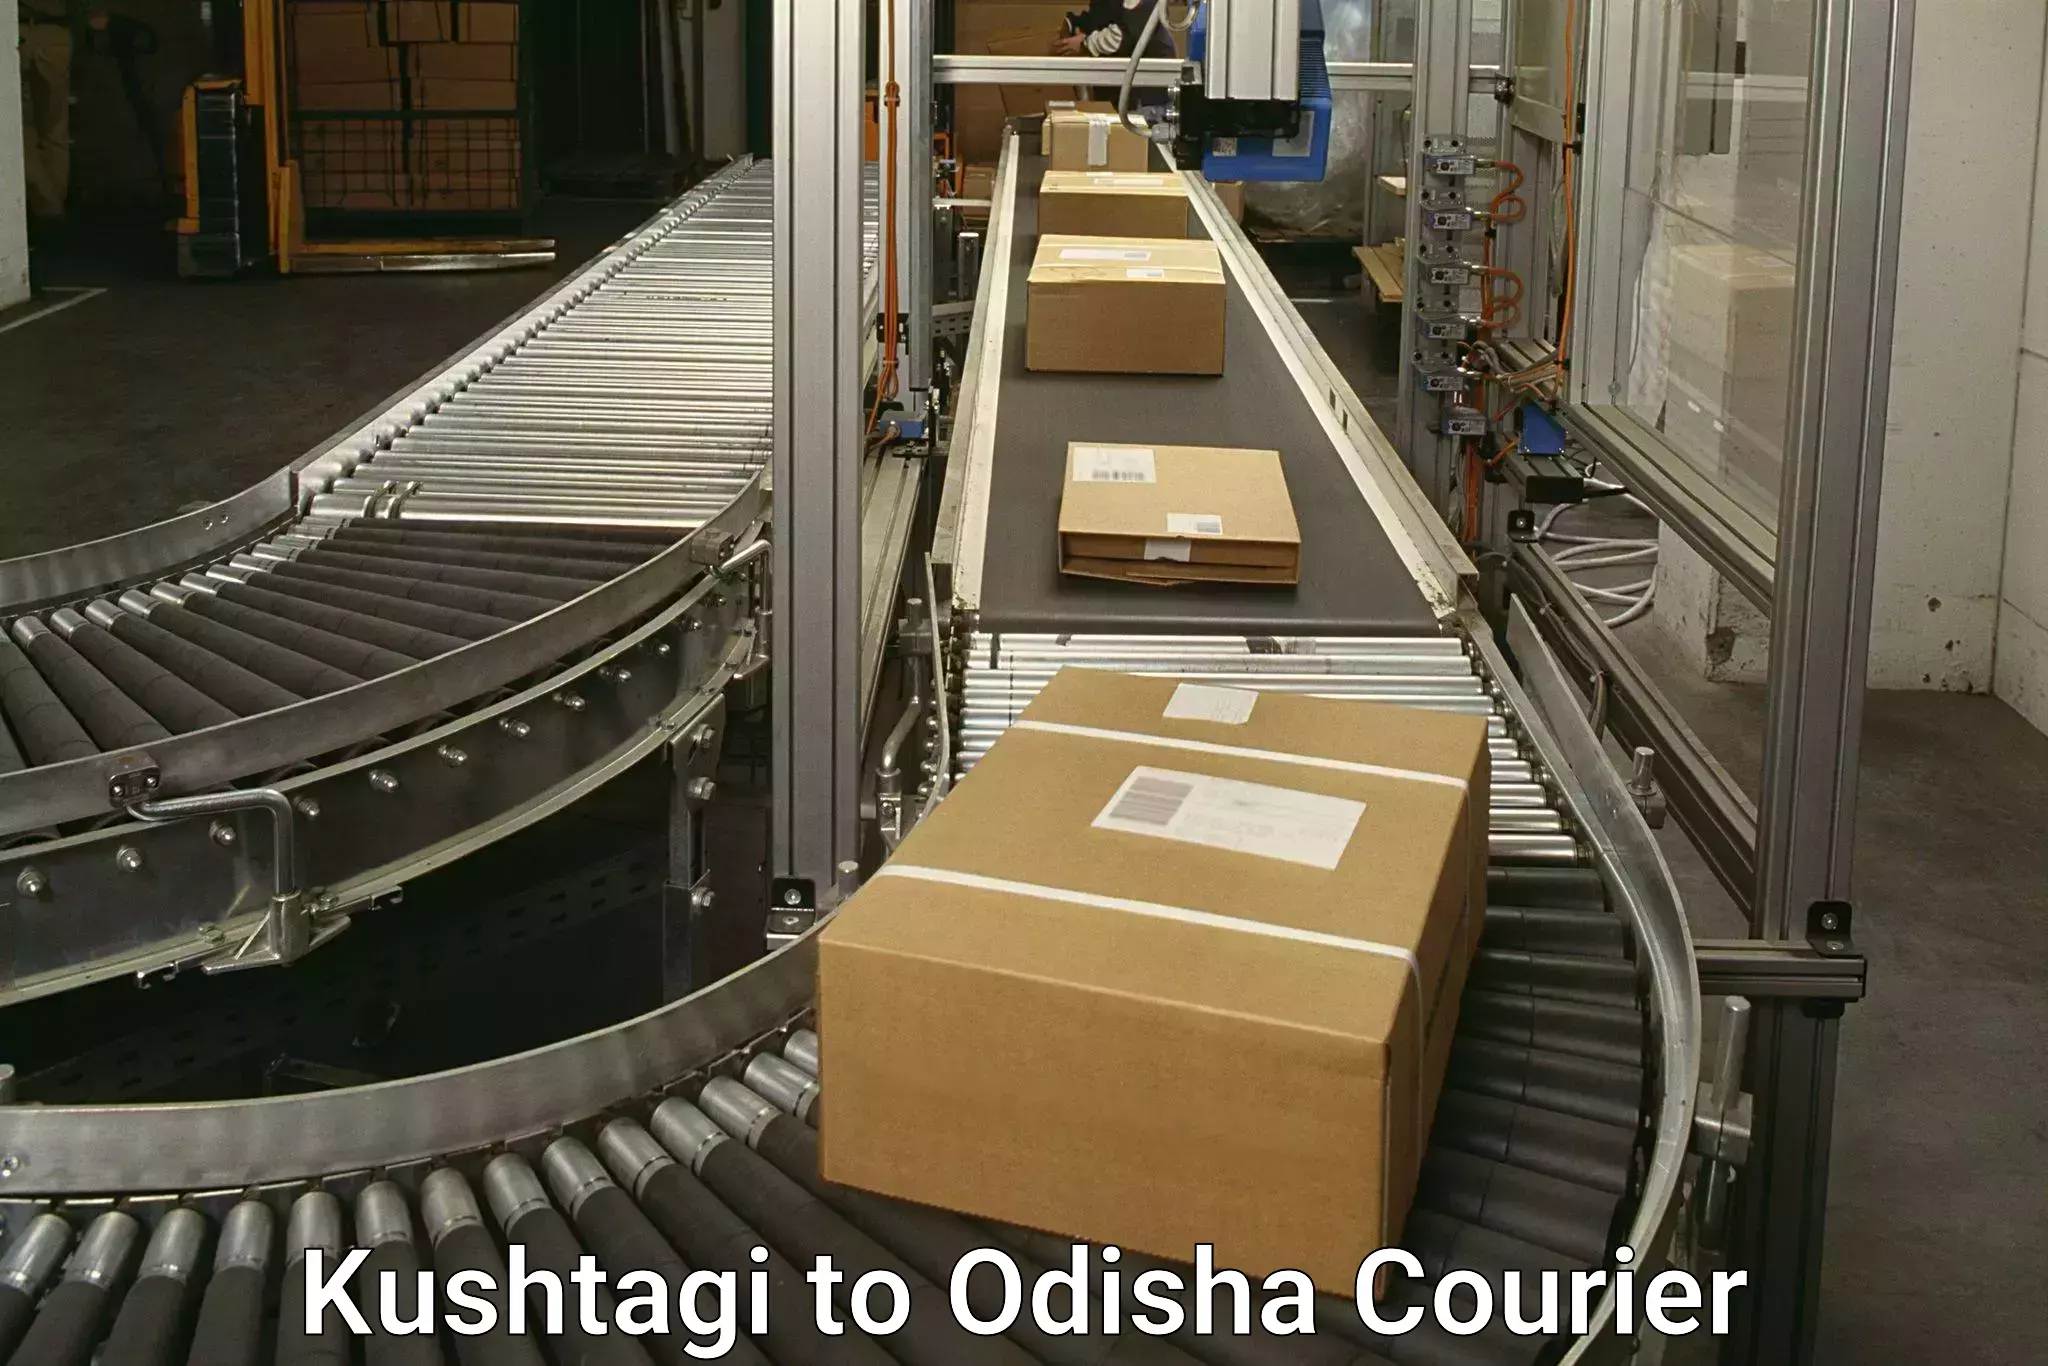 24/7 courier service Kushtagi to Odisha